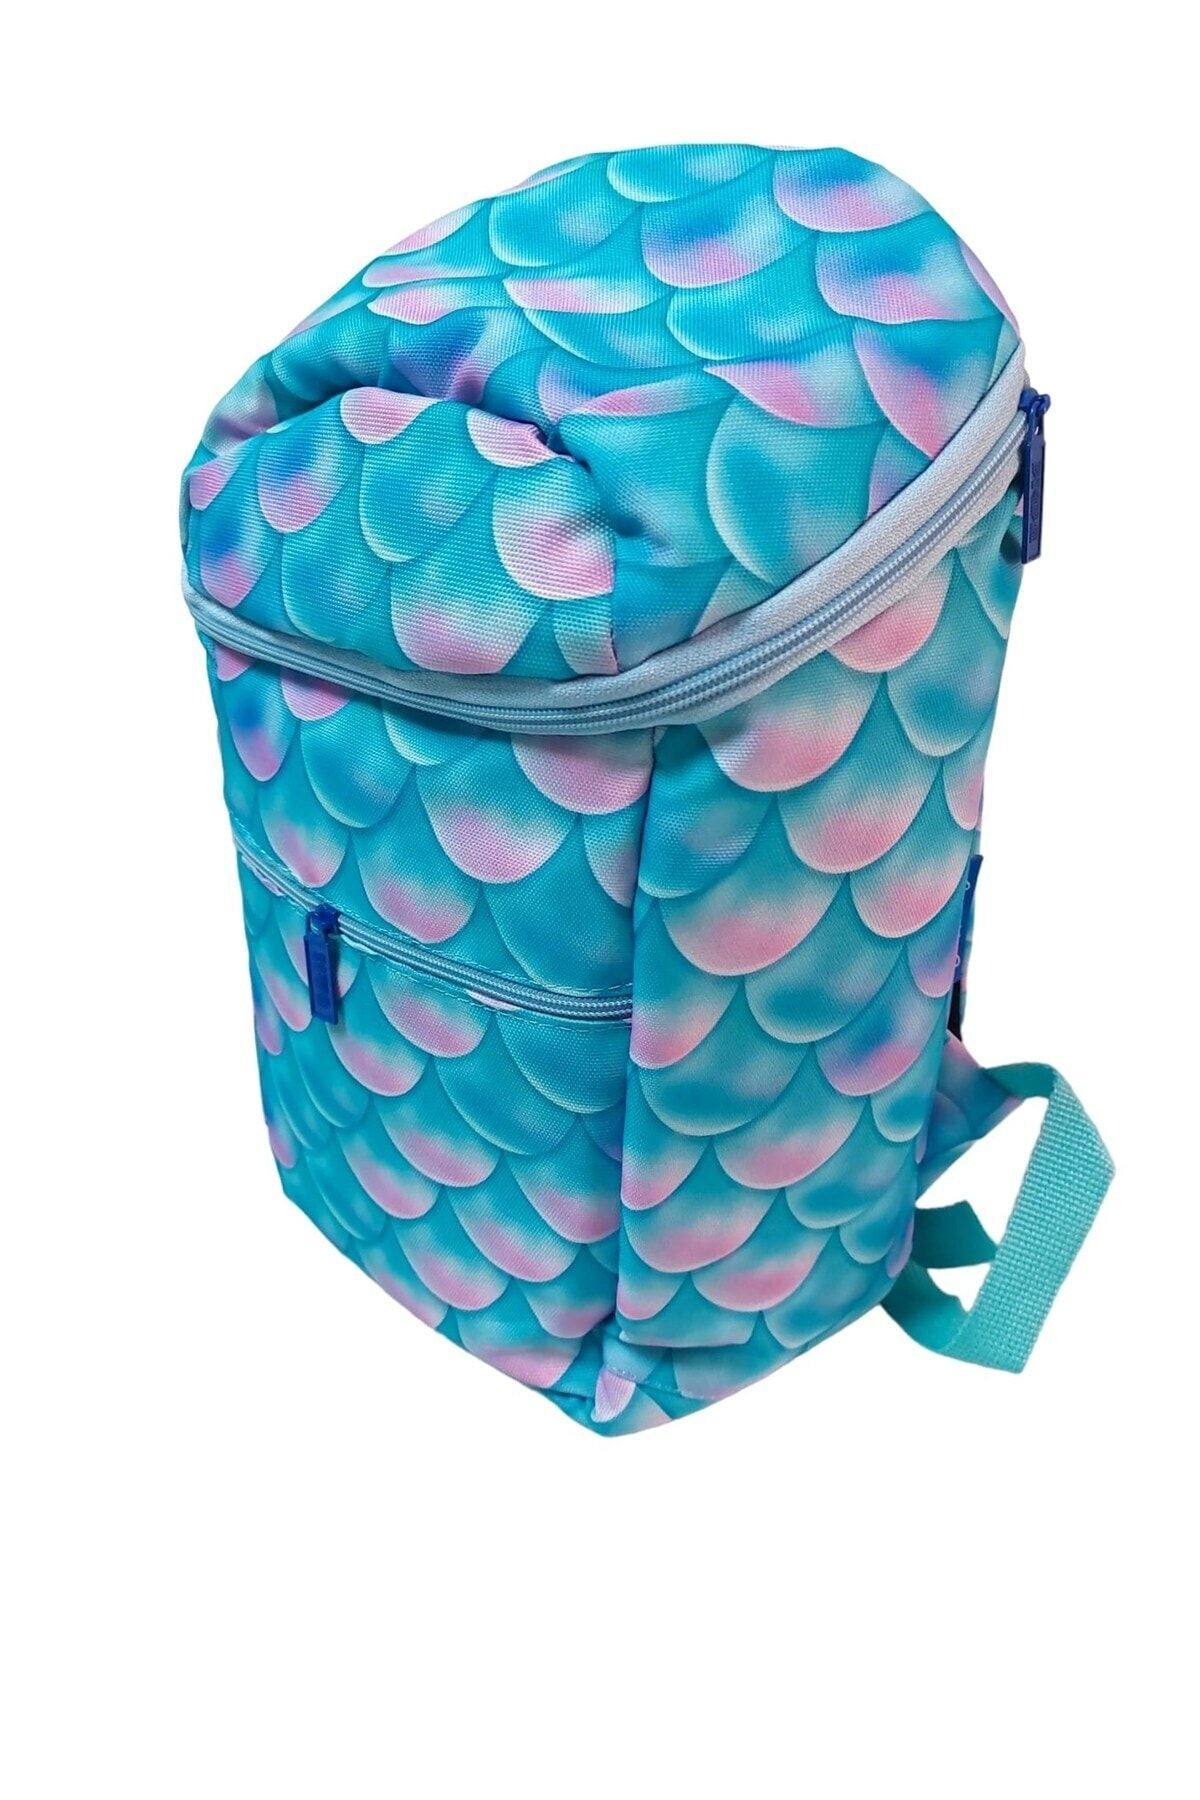 tom çanta Ocean Mavi Desenli Günlük-Okul Çantası 35x25